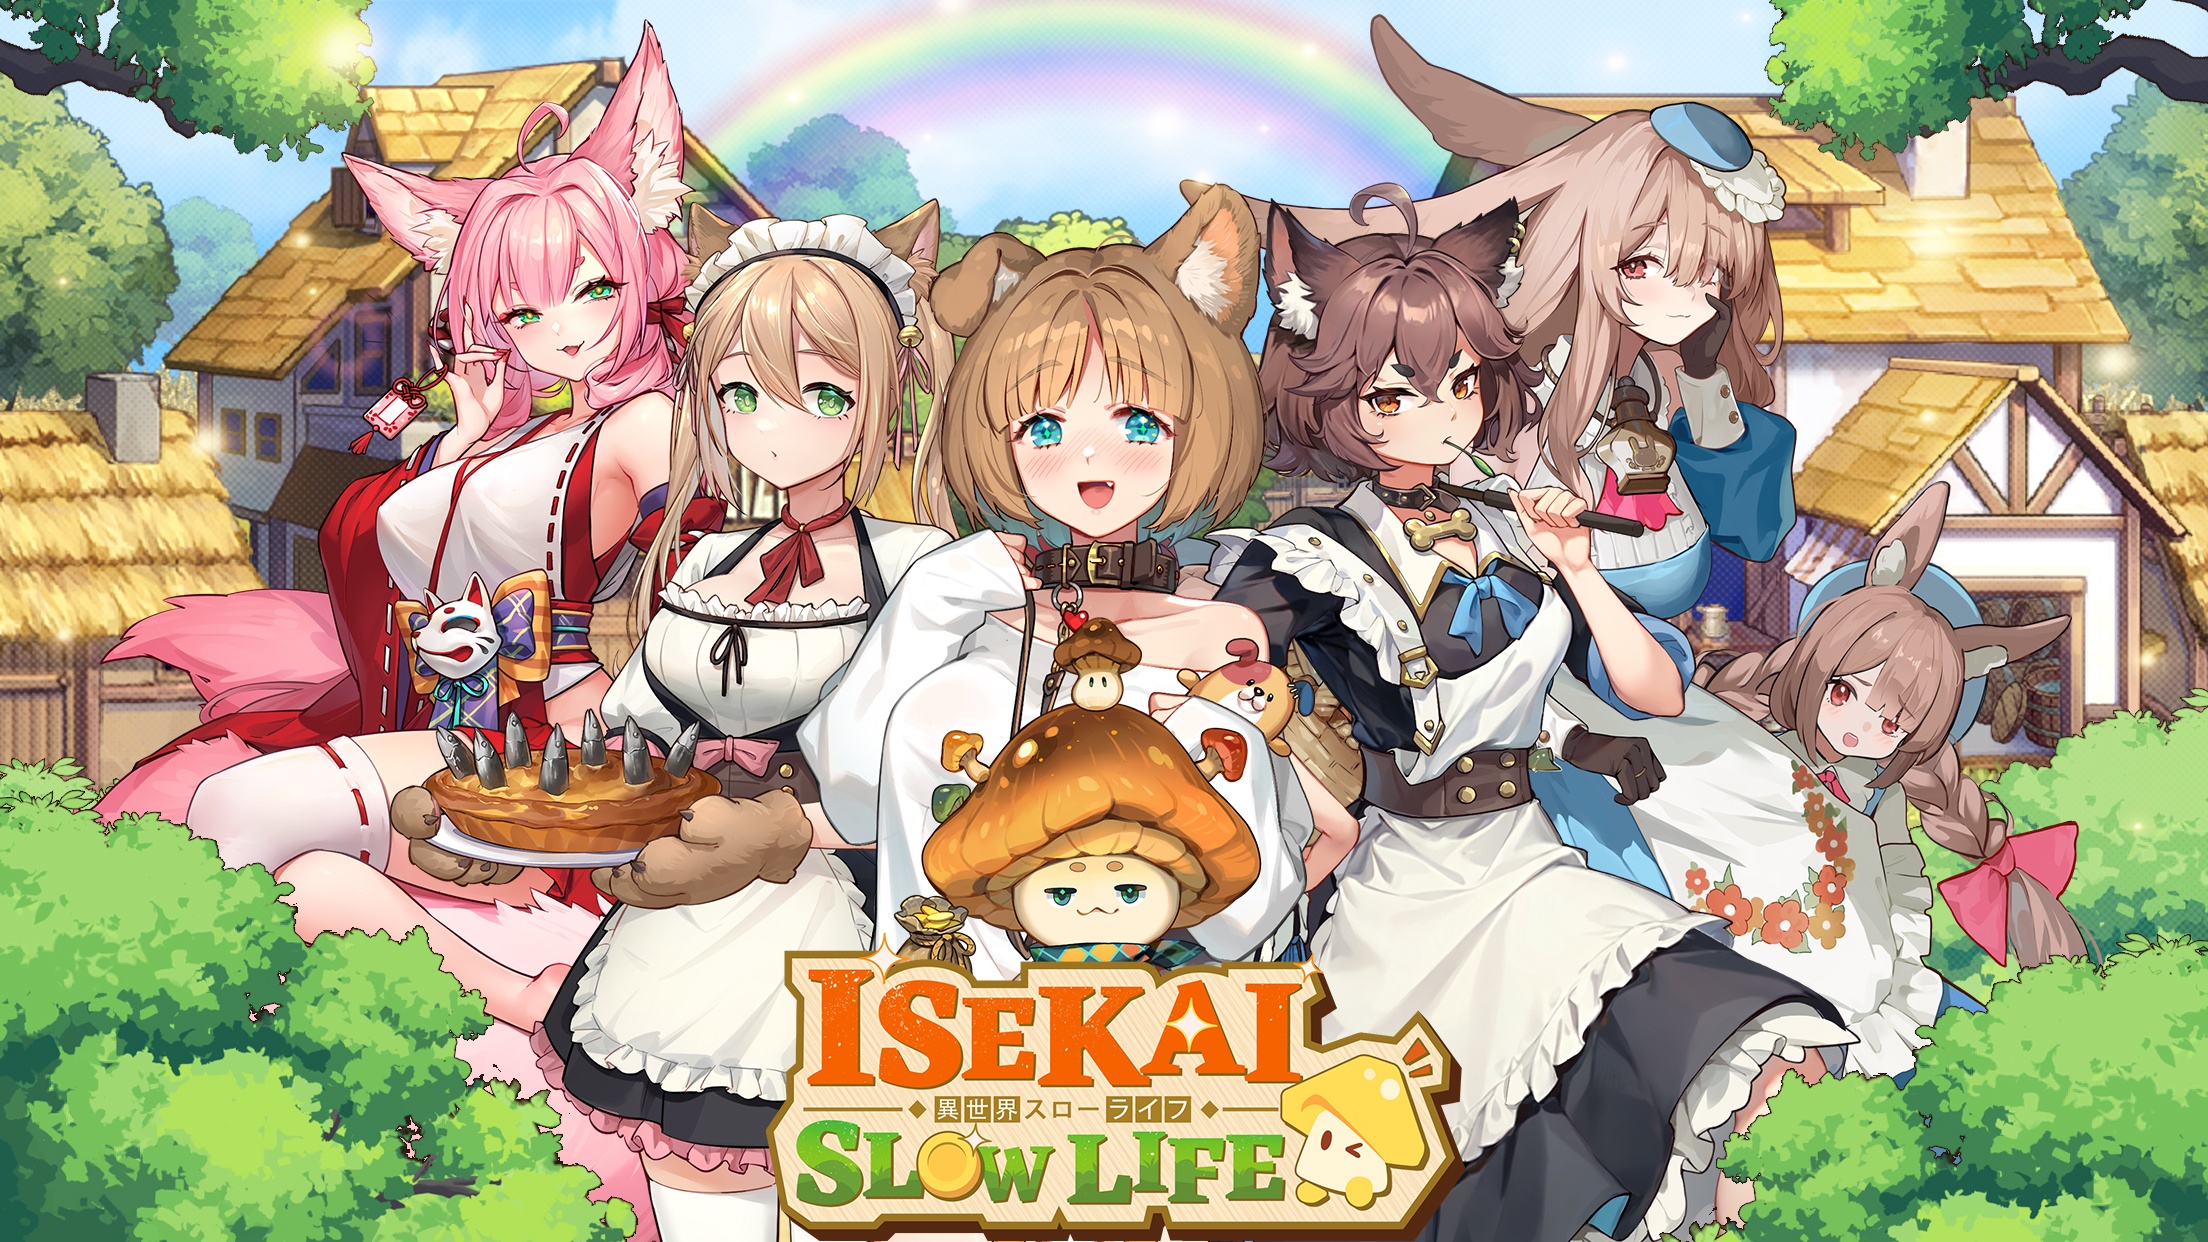 So spielt man Isekai: Slow Life auf dem PC mit BlueStacks